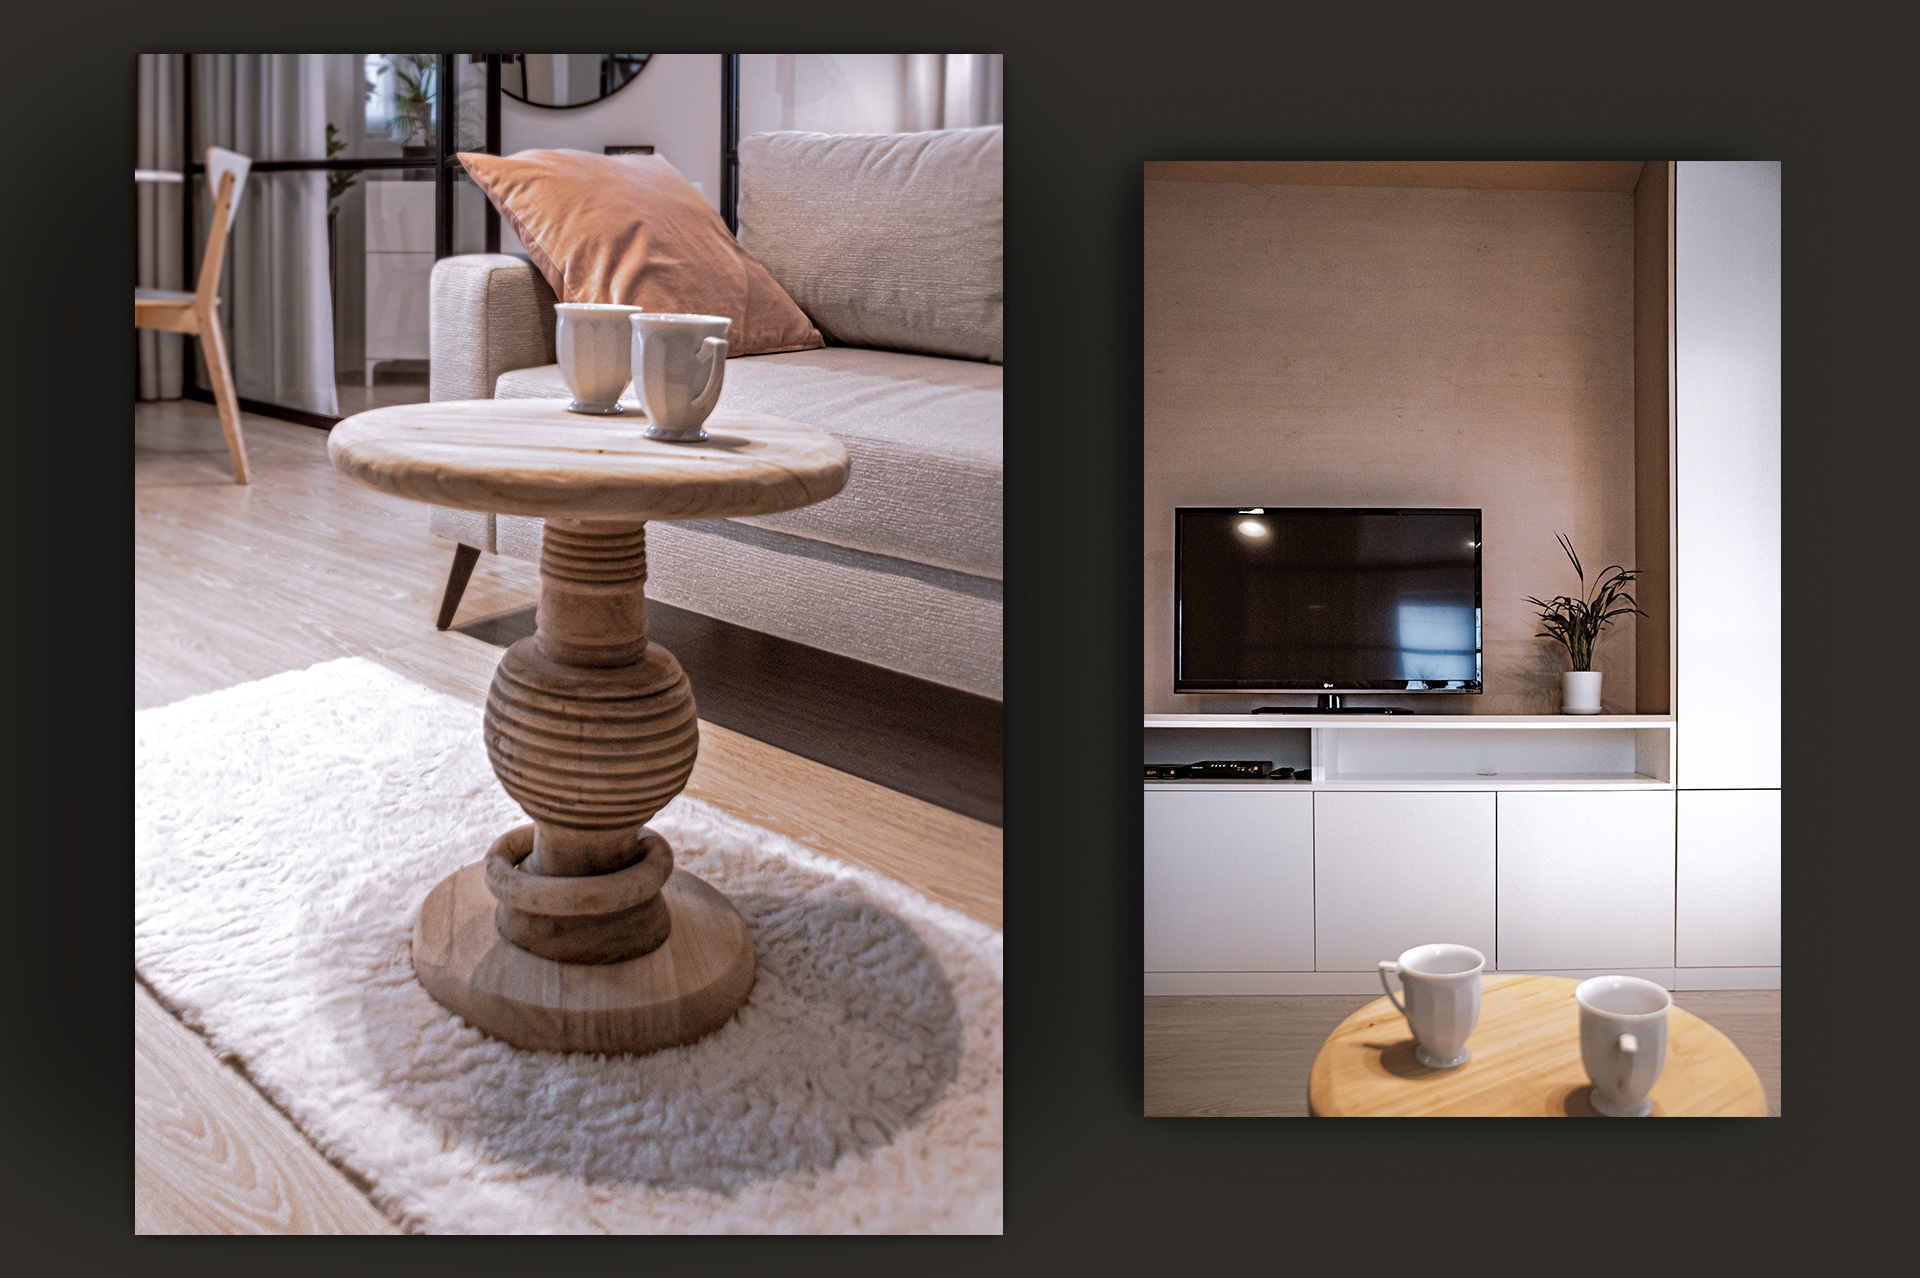 Widok na drewniane akcenty w salonie – oryginalny stolik kawowy oraz naturalna faktura wnęki RTV.